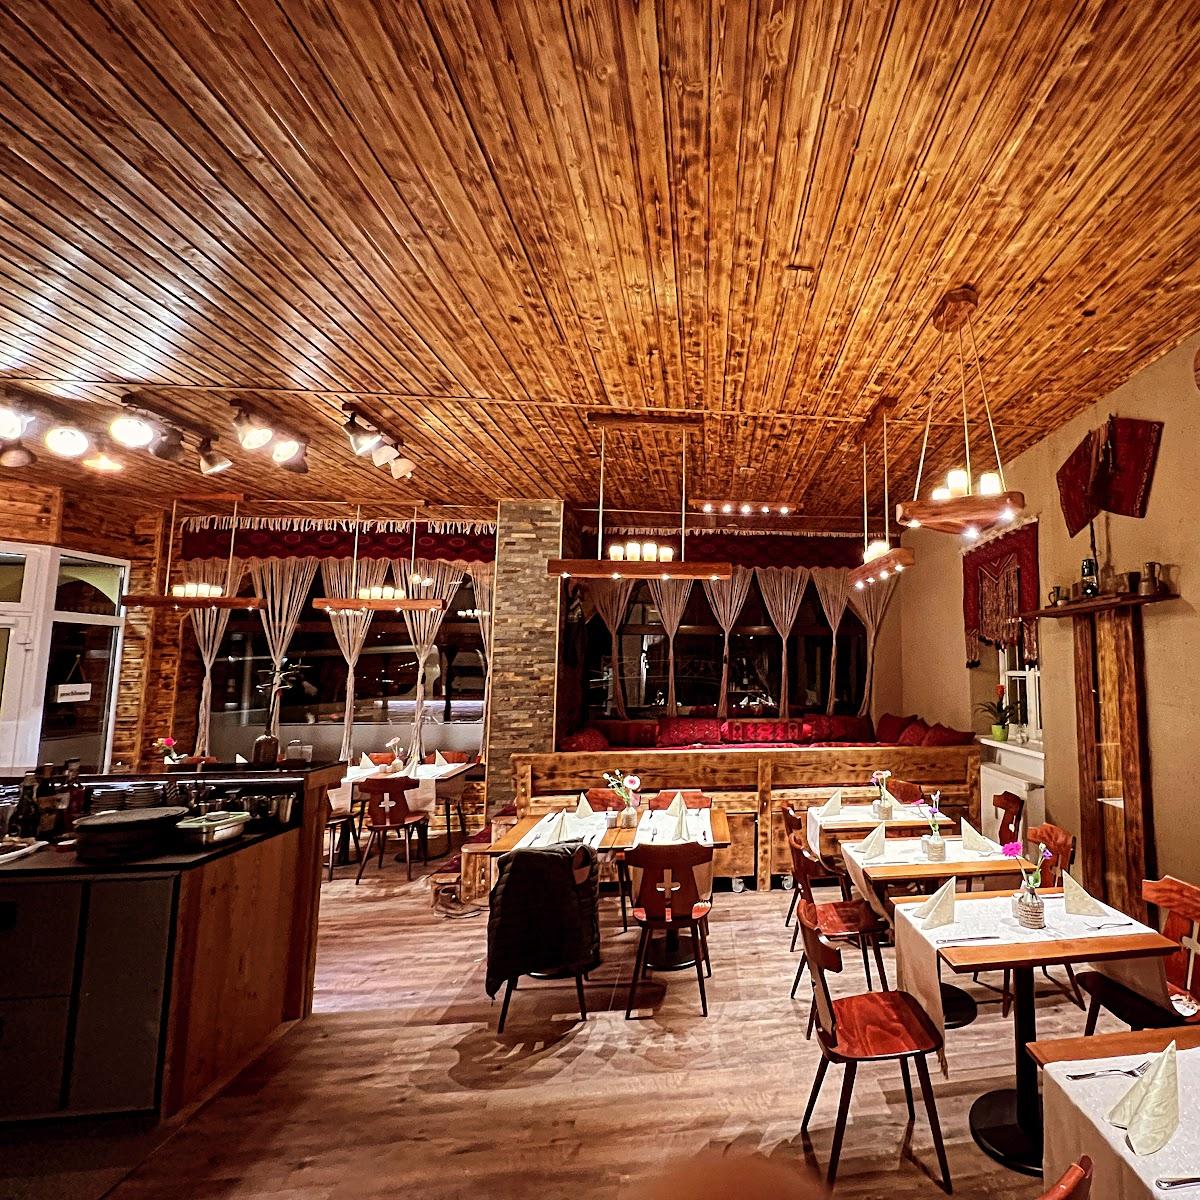 Restaurant "Restaurant Bagram" in Garmisch-Partenkirchen